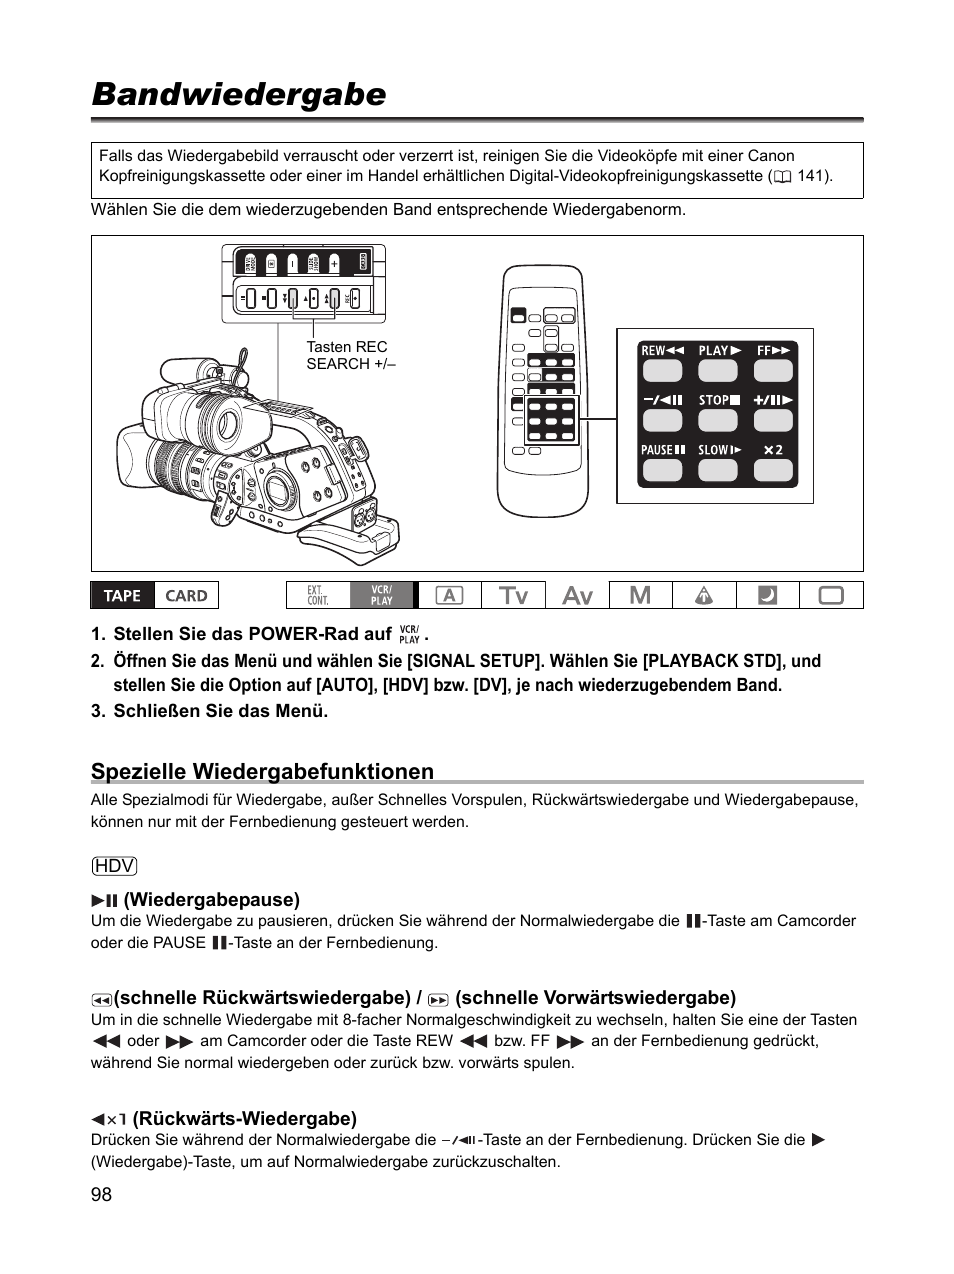 Wiedergabe, Bandwiedergabe, Spezielle wiedergabefunktionen | Canon XL H1 Benutzerhandbuch | Seite 98 / 163